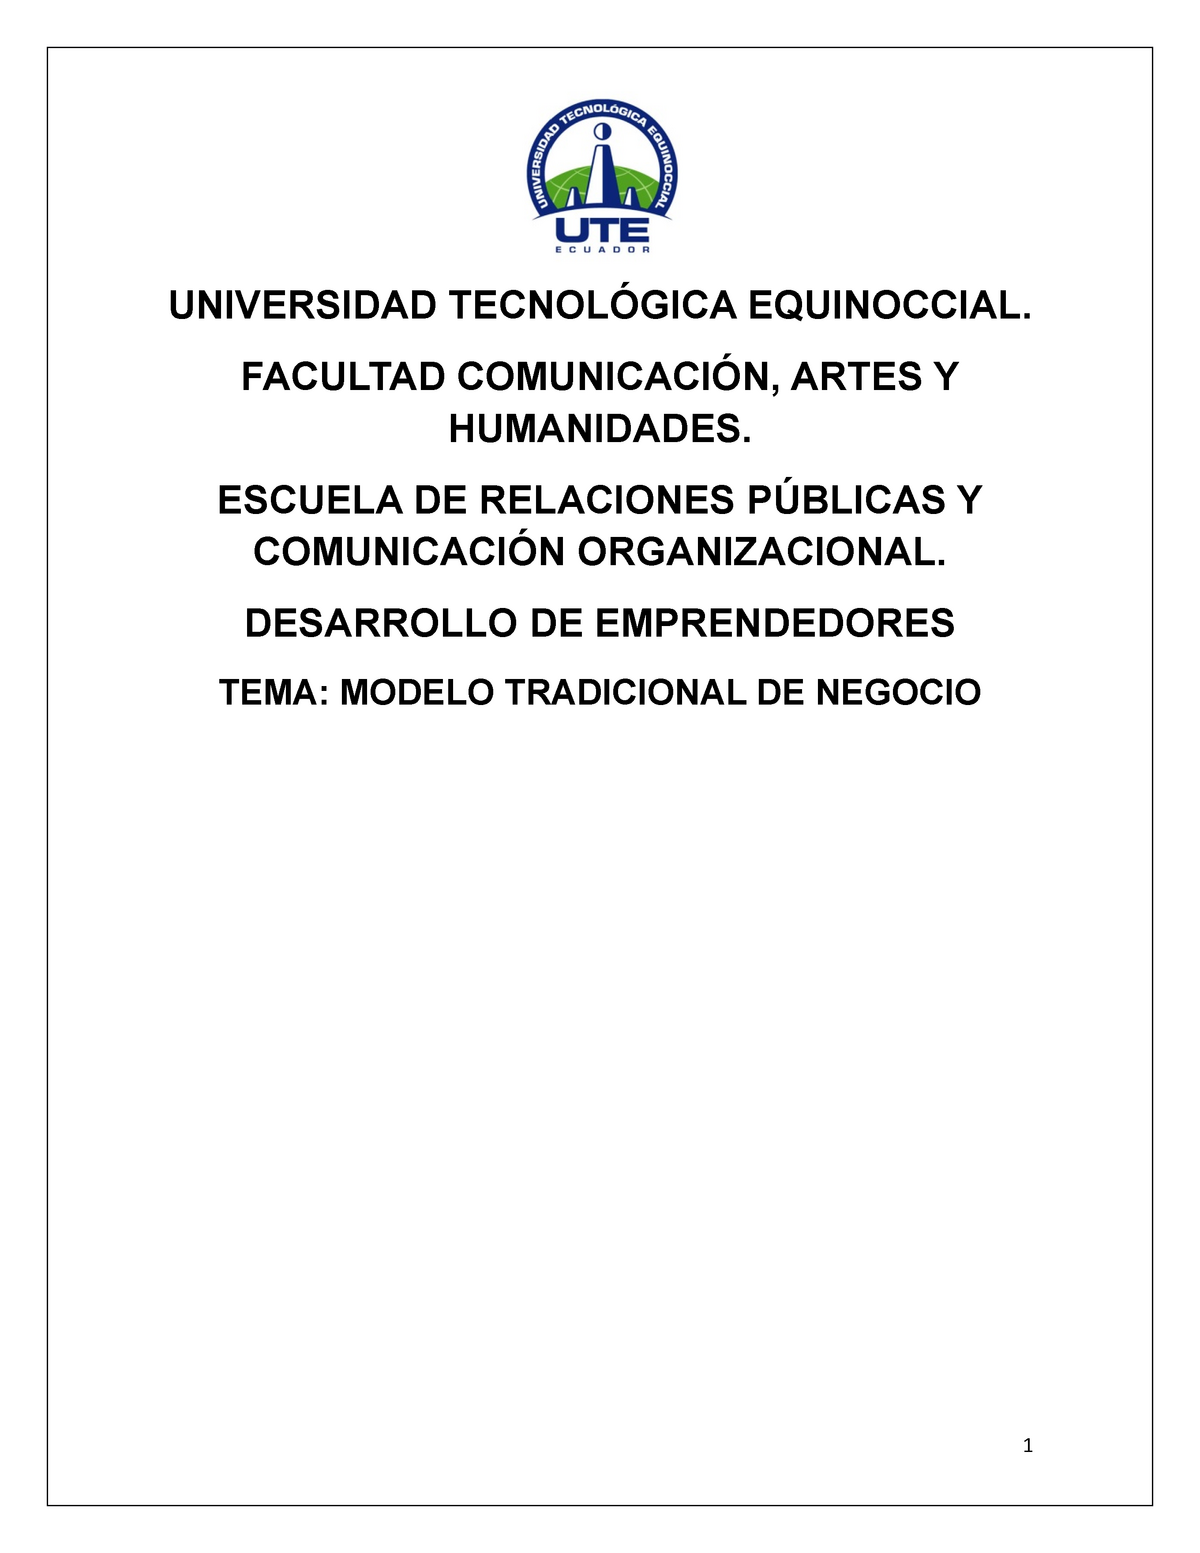 Modelo Tradicional de Negocio - UNIVERSIDAD TECNOLÓGICA EQUINOCCIAL.  FACULTAD COMUNICACIÓN, ARTES Y - Studocu